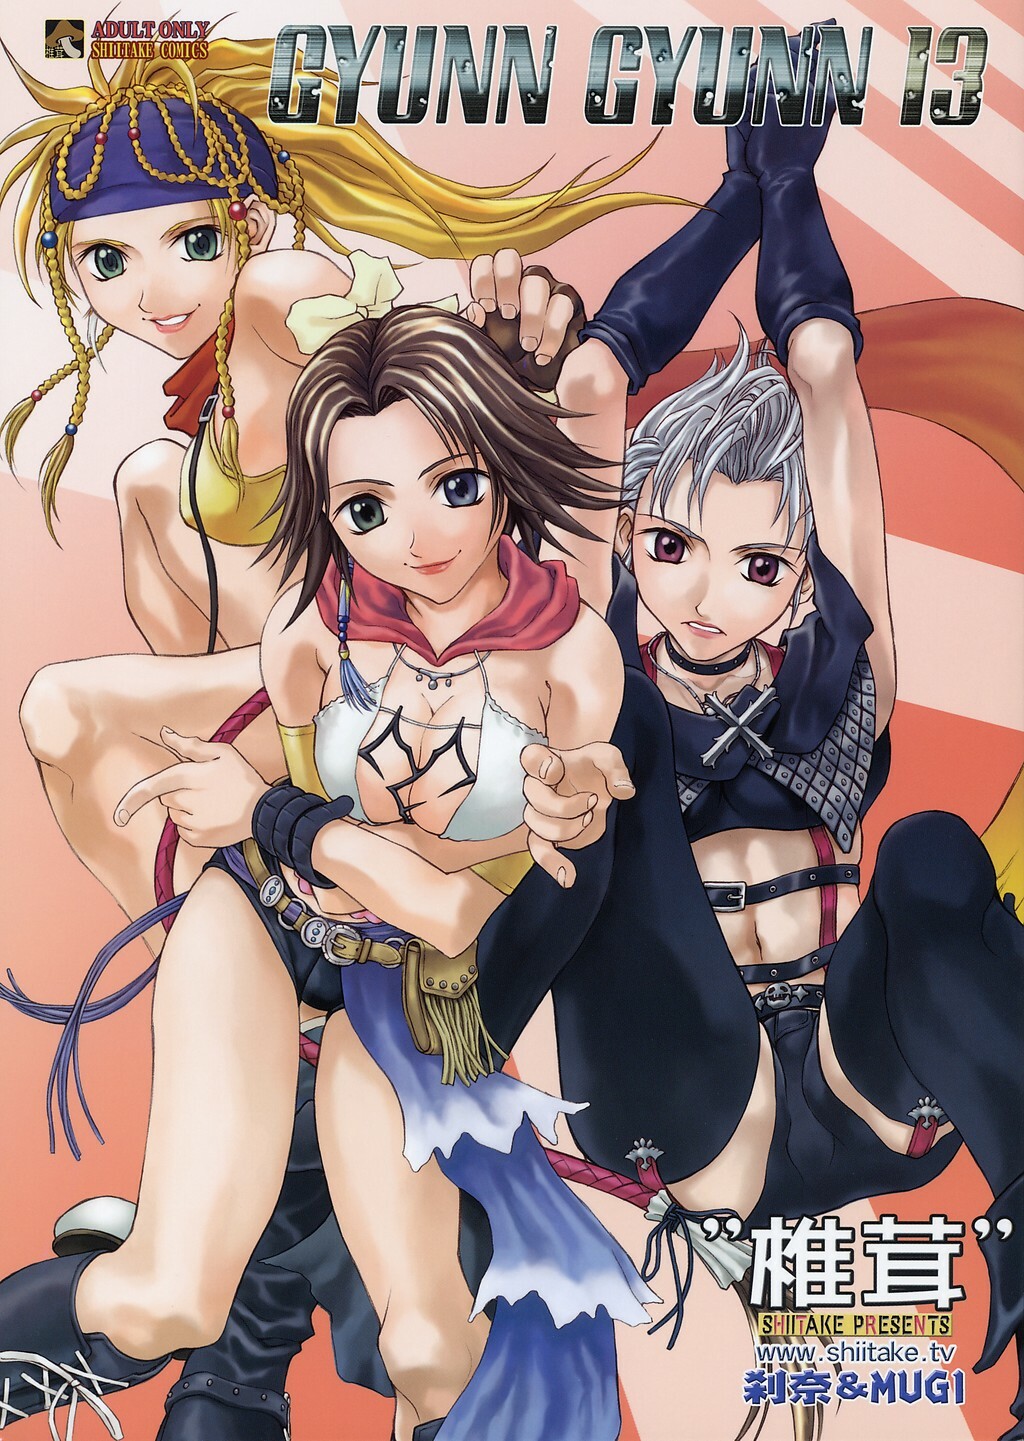 (CR33) [Shiitake (Mugi, Setsuna)] GYUNN GYUNN 13 (Final Fantasy X-2) page 1 full